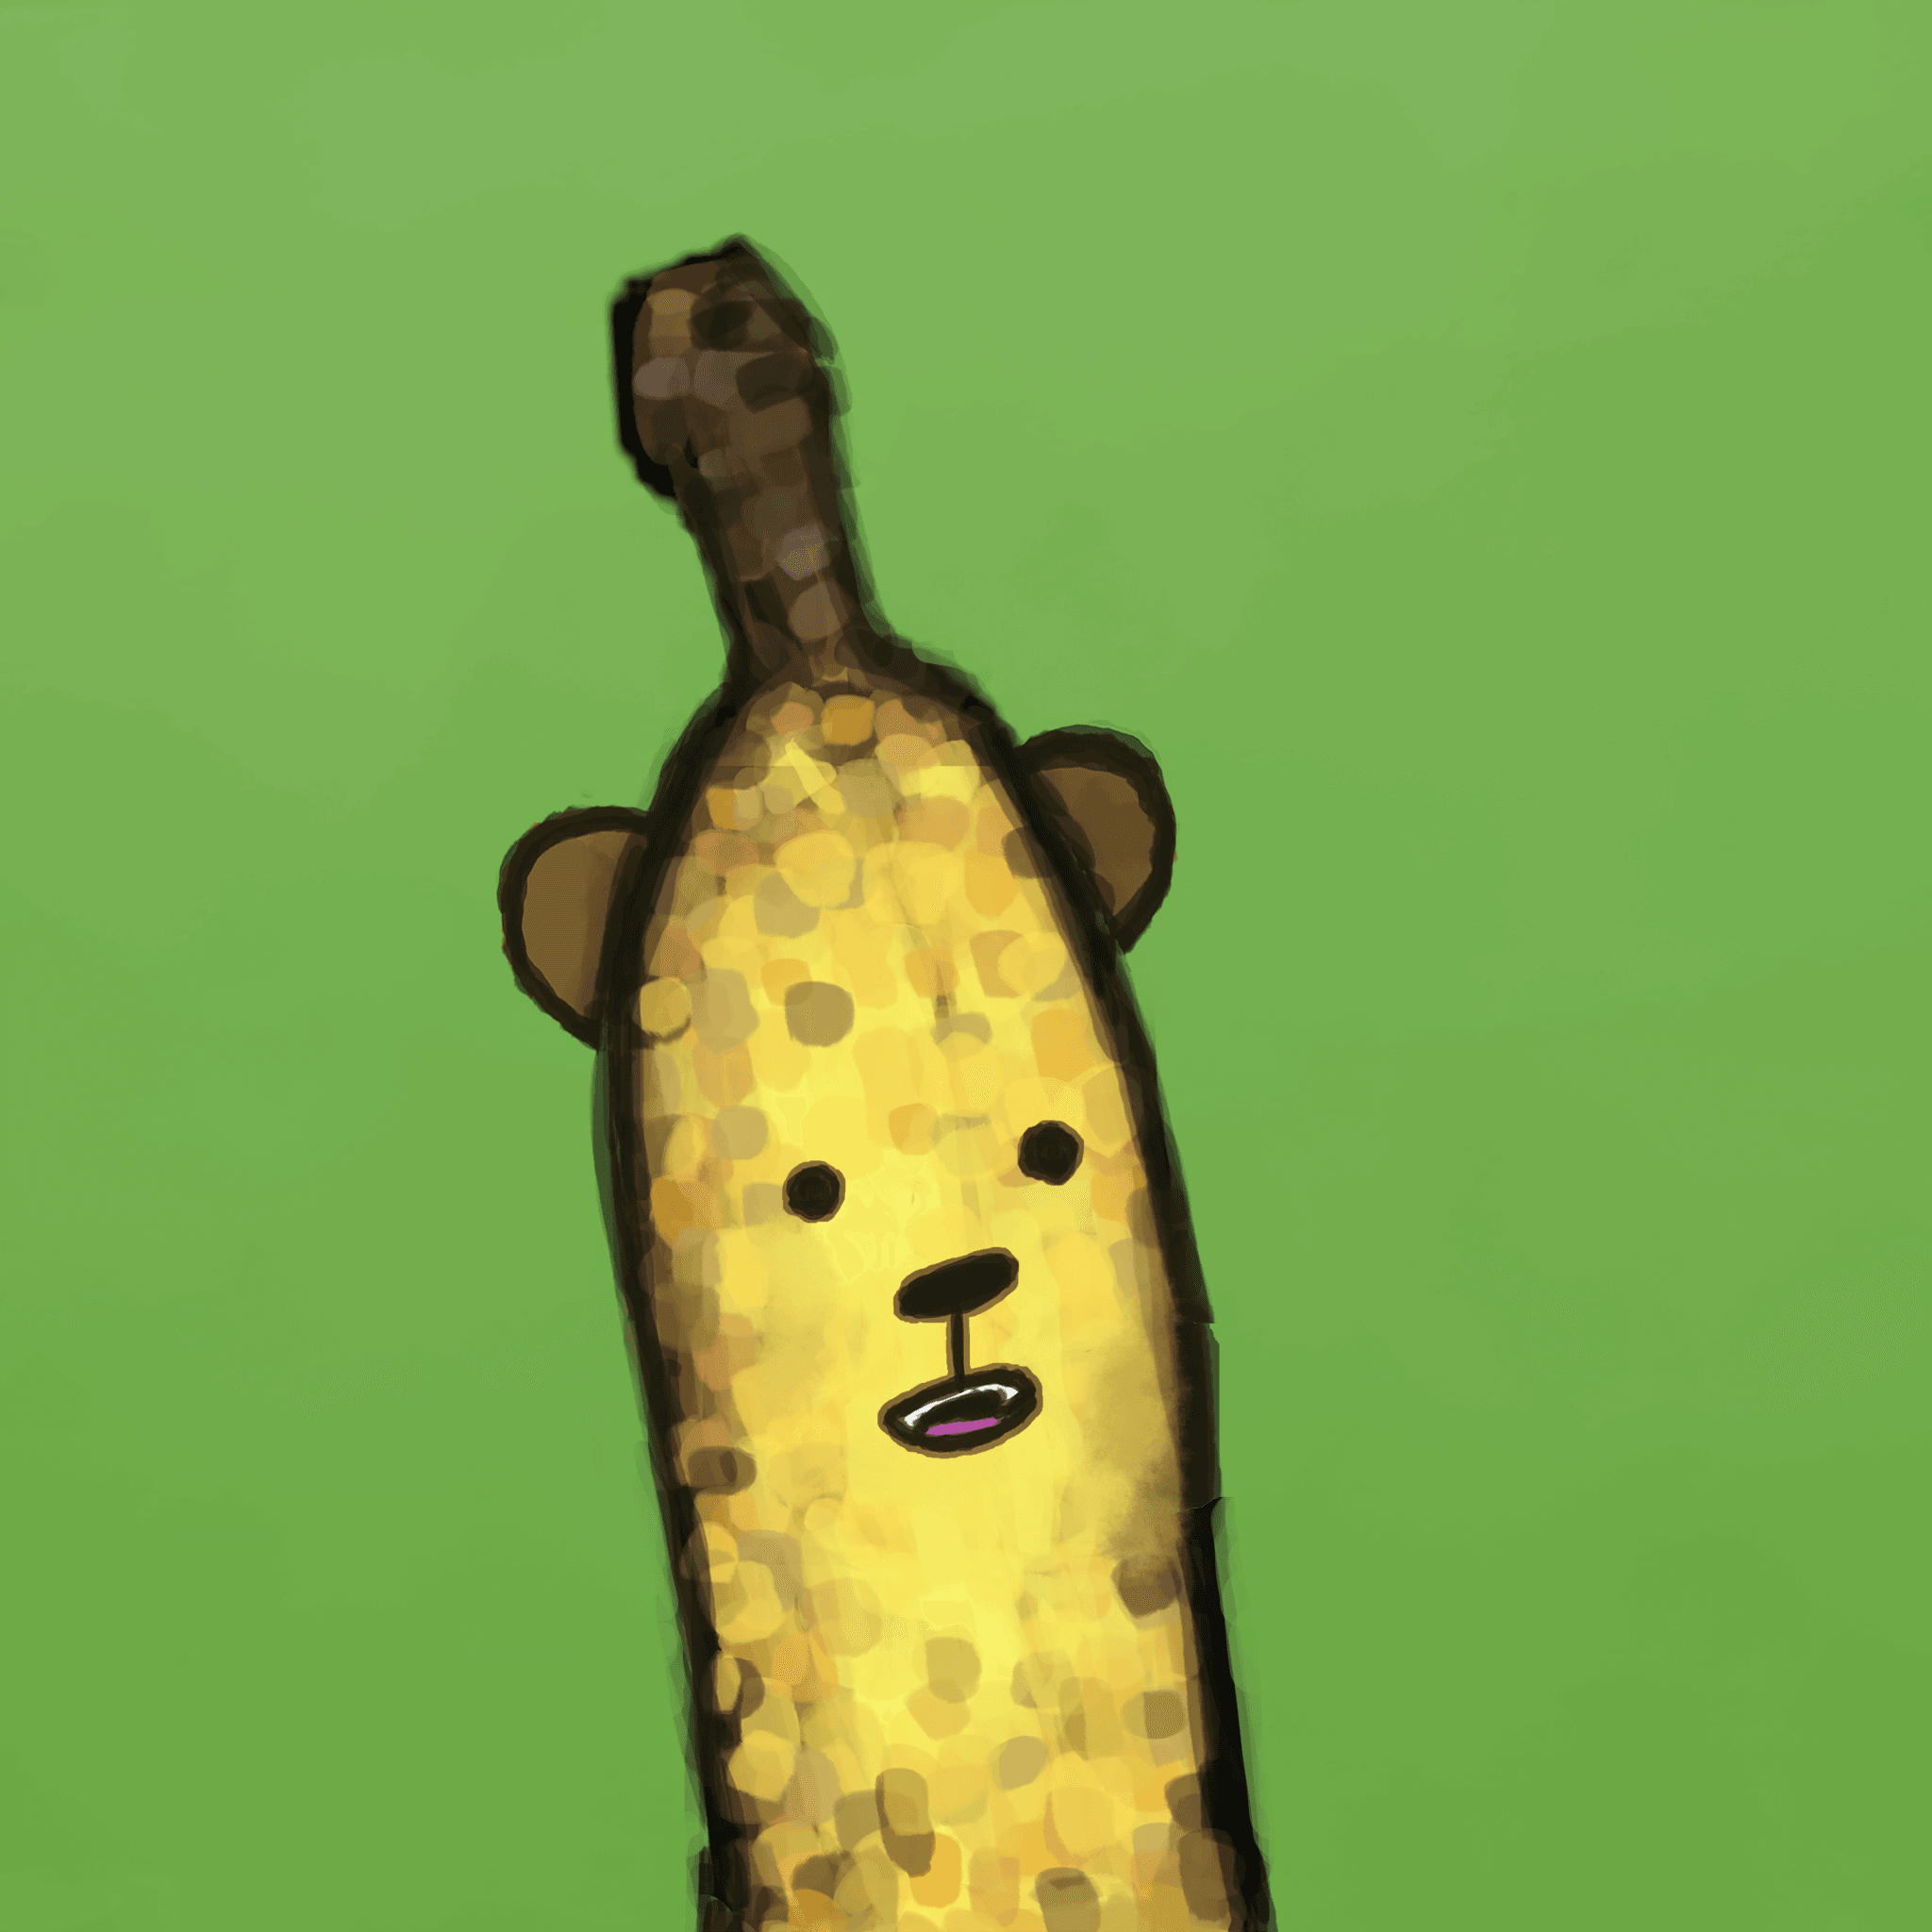 Banana Bear